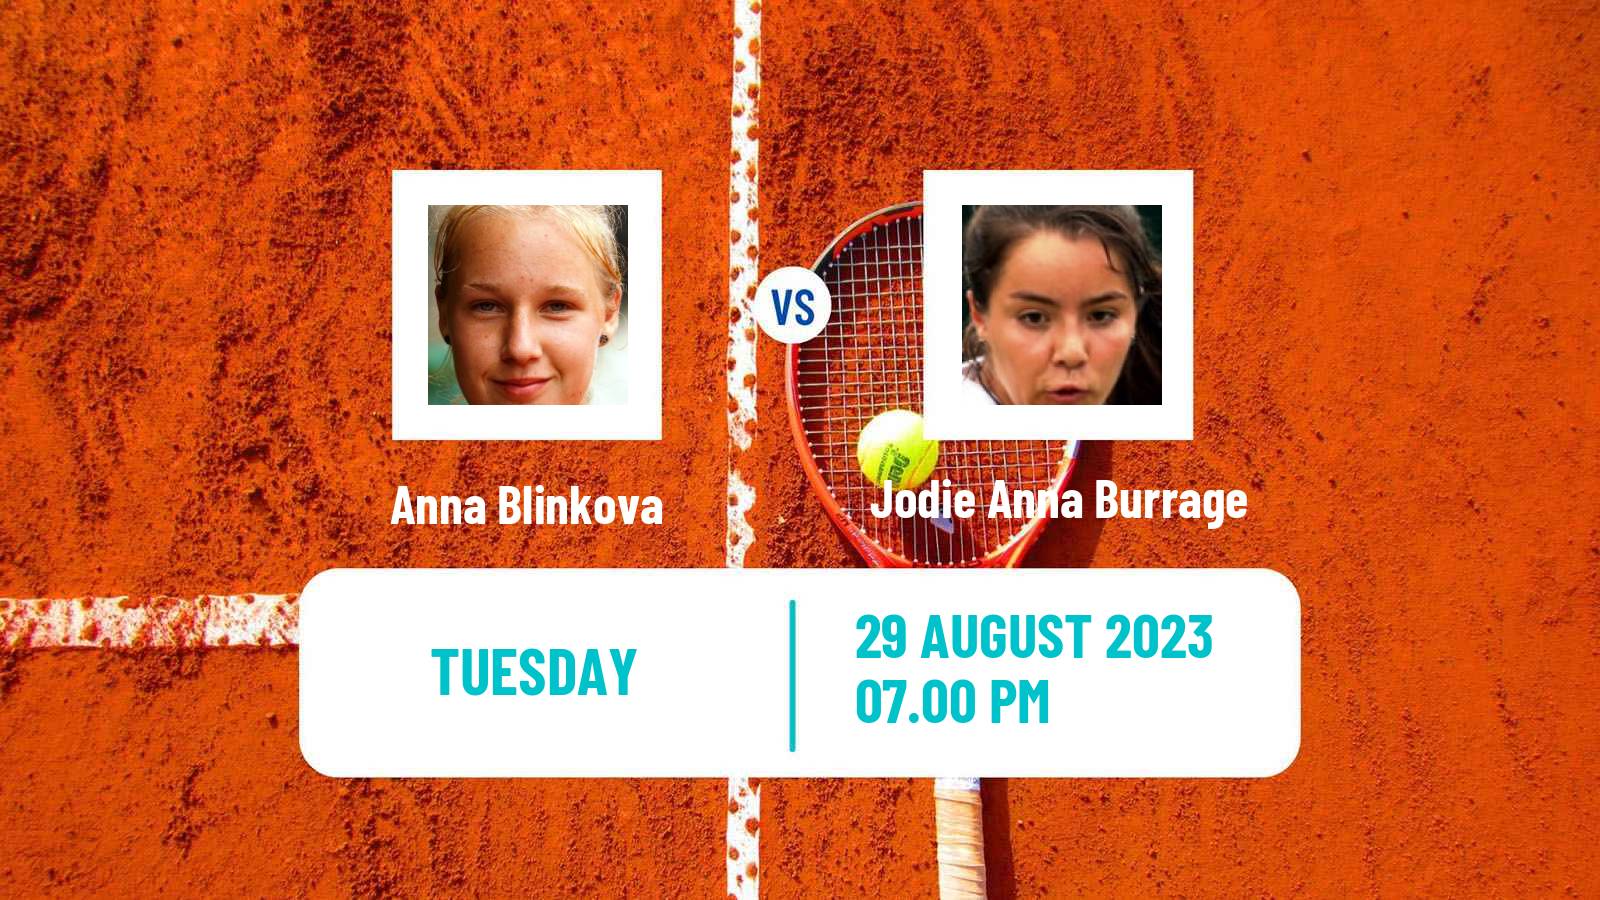 Tennis WTA US Open Anna Blinkova - Jodie Anna Burrage